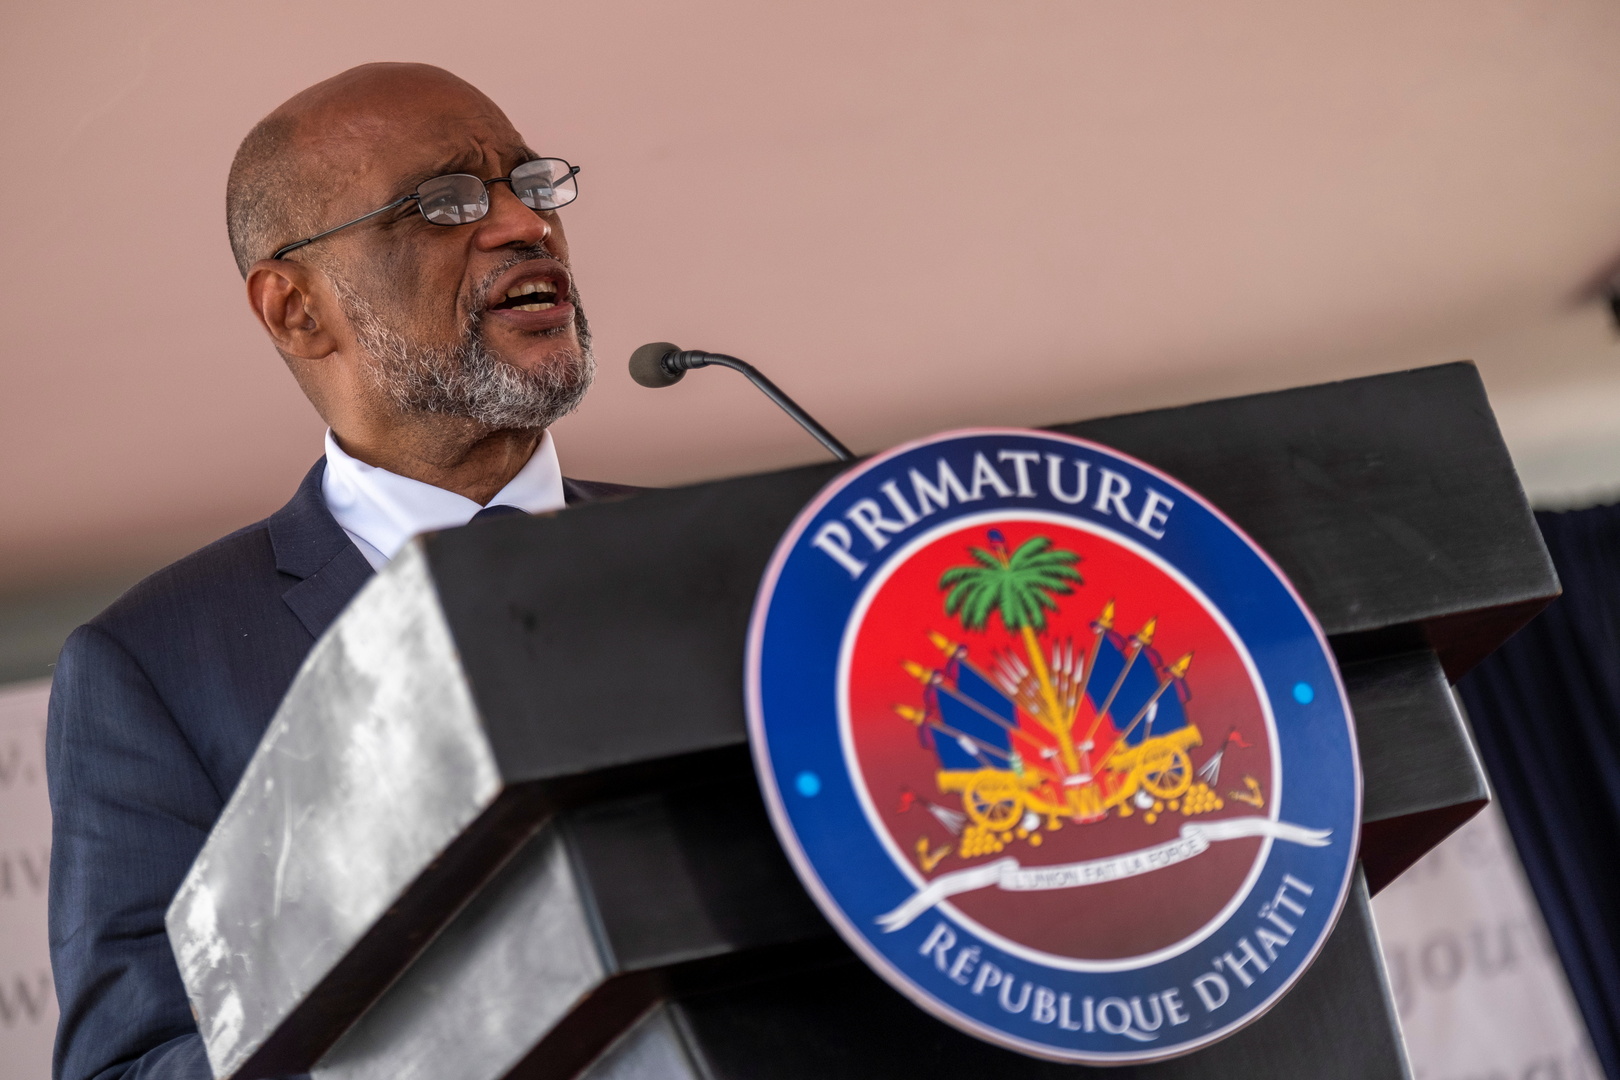 رئيس وزراء هايتي: الحكومة تخطط لإجراء الانتخابات في أقرب وقت ممكن